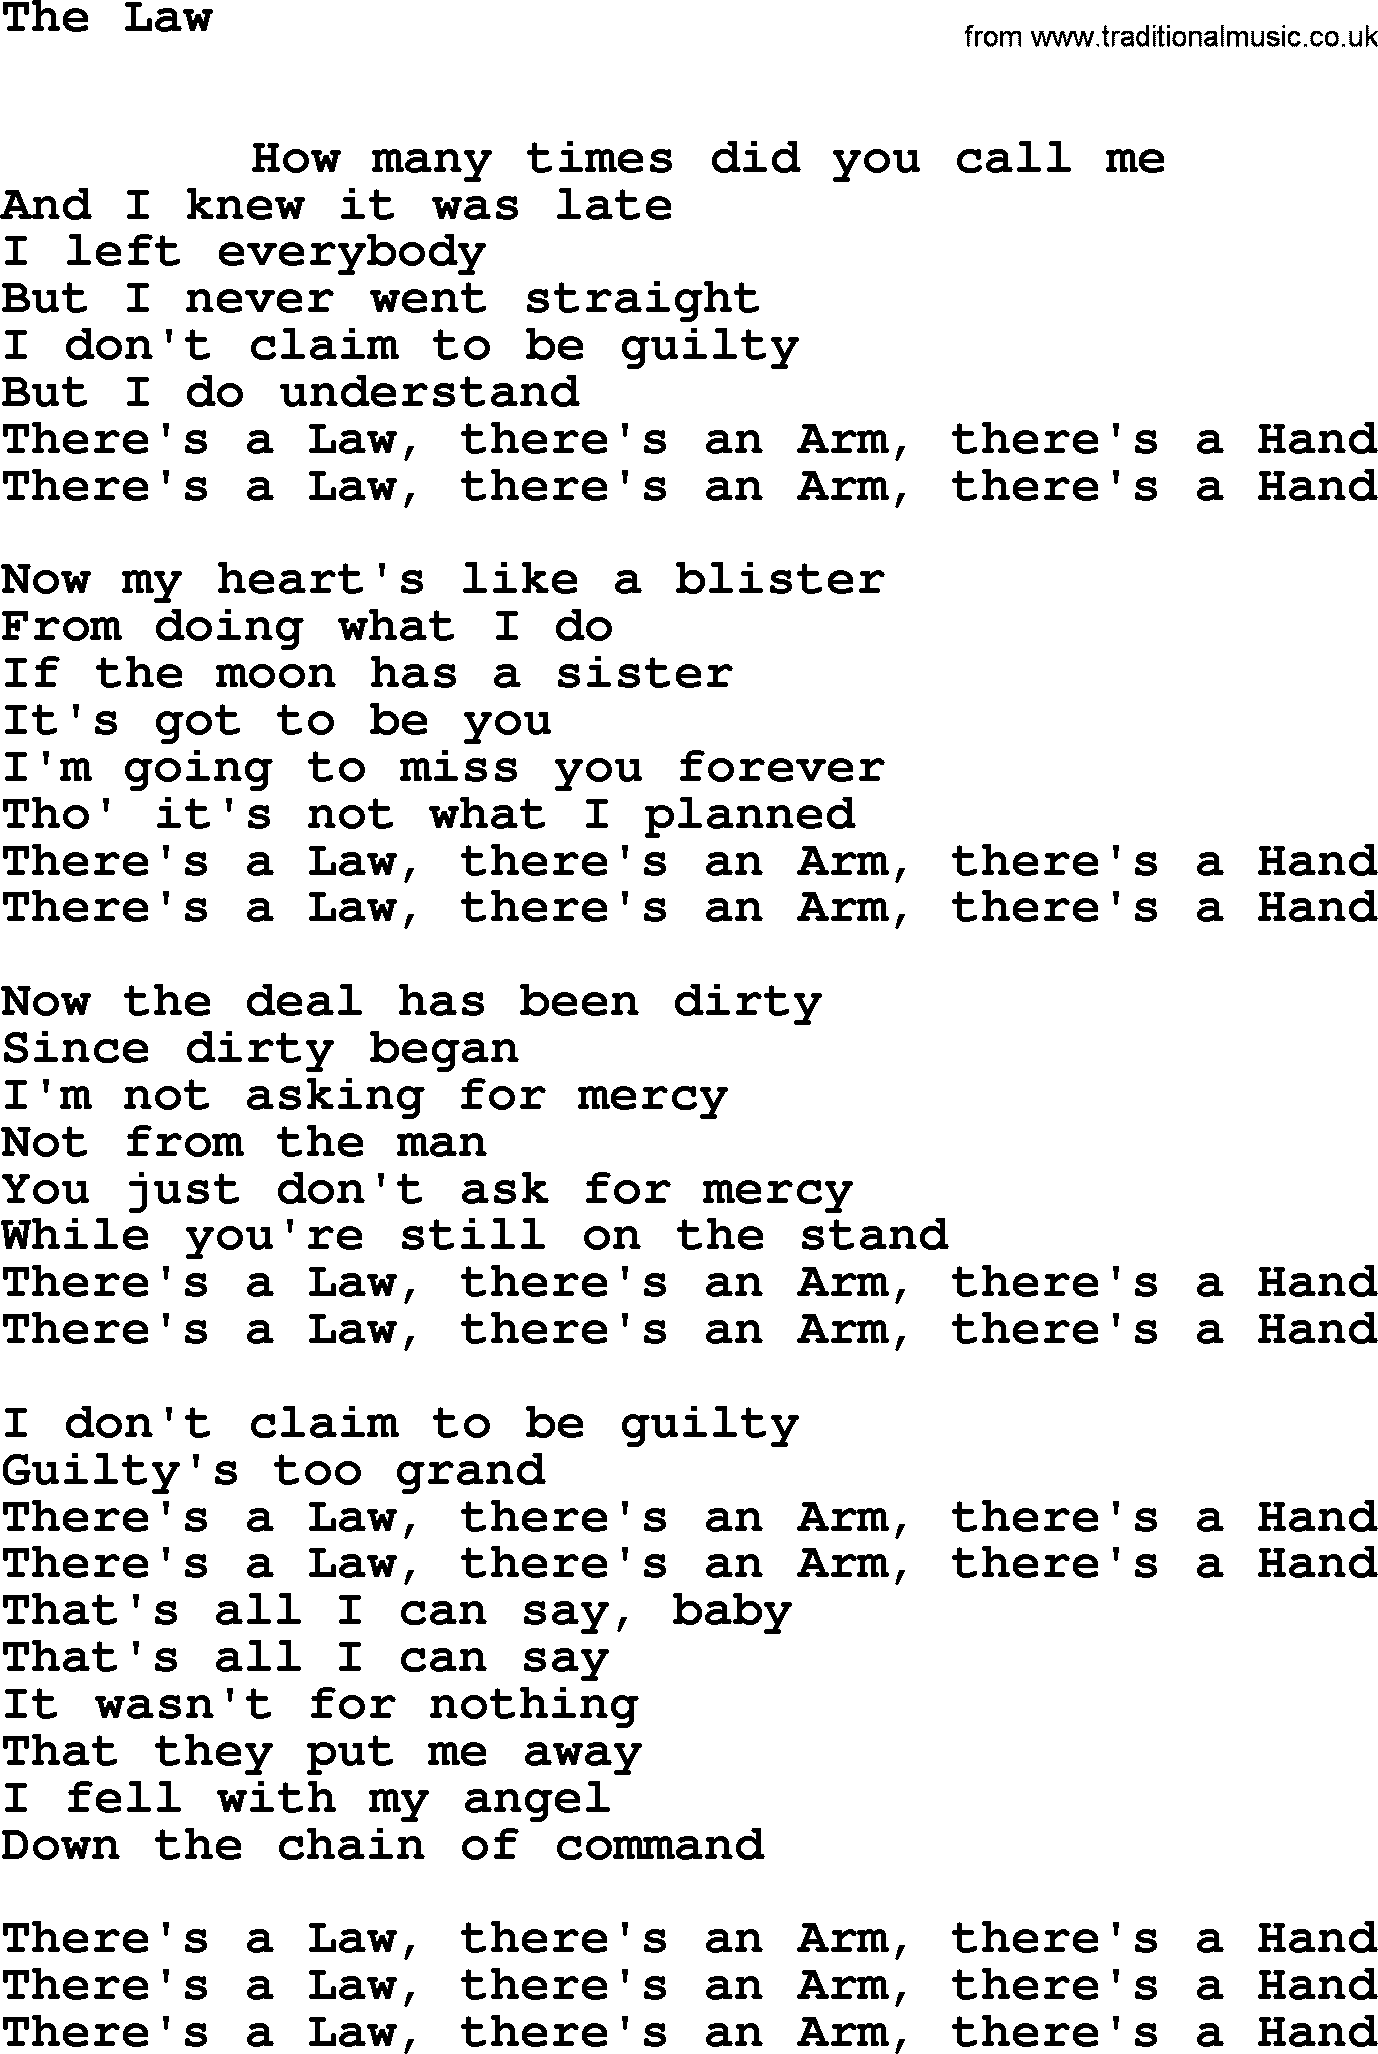 Leonard Cohen song Law-leonard-cohen.txt lyrics